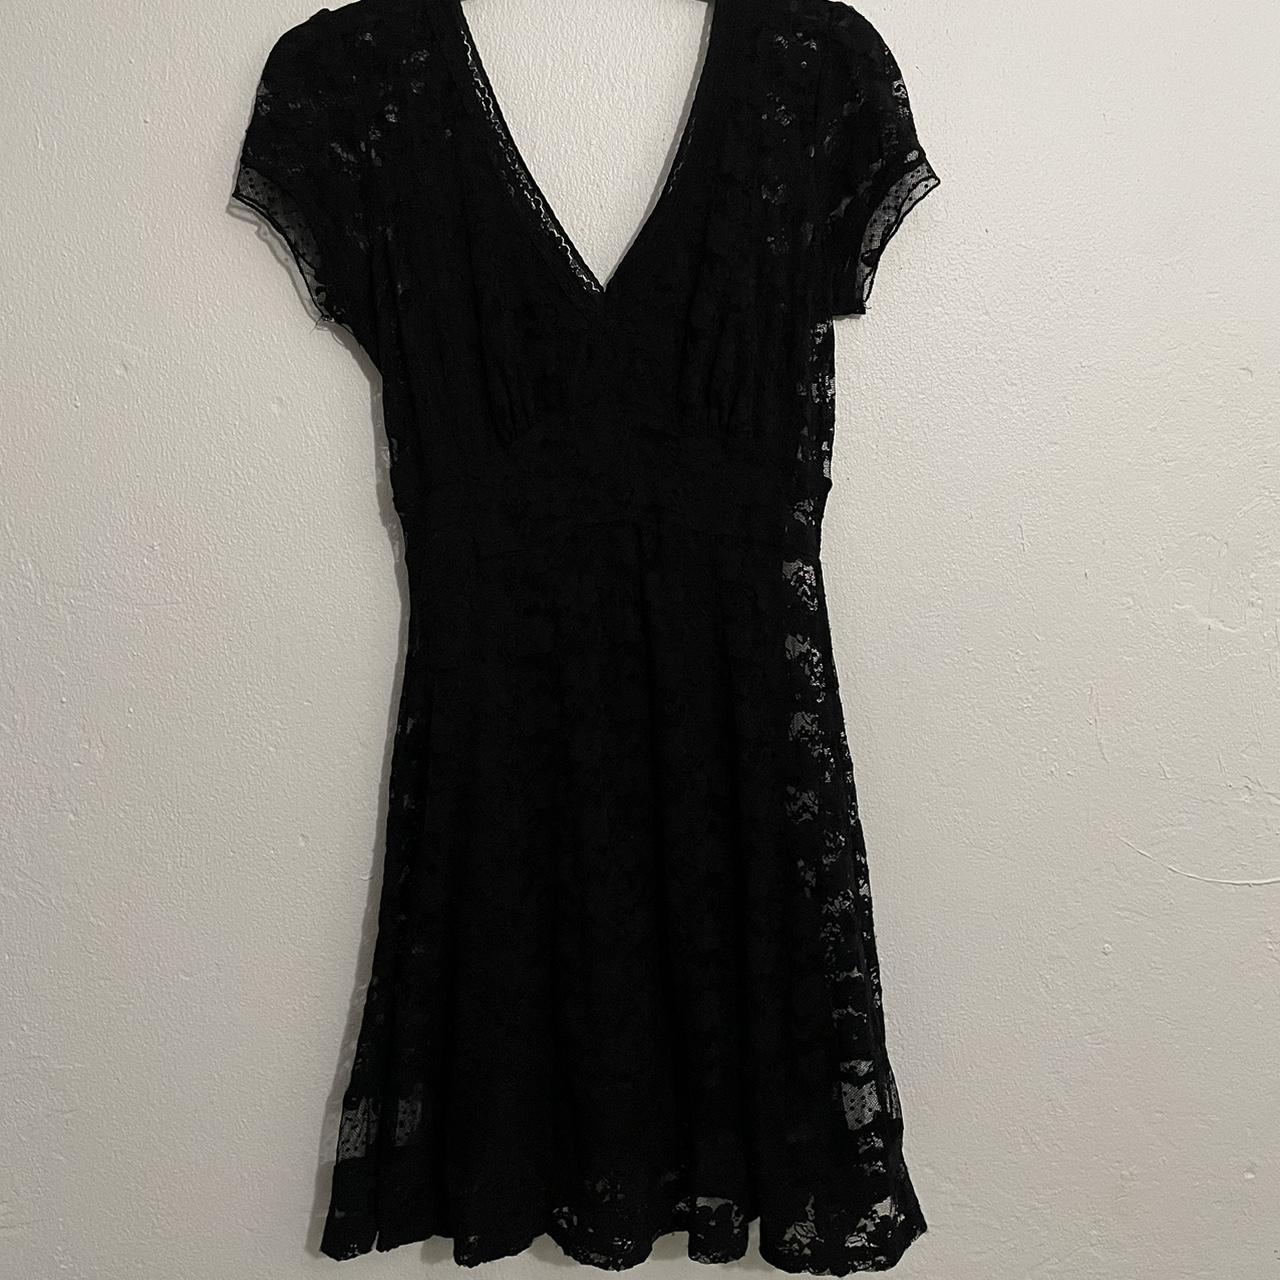 Royal Bones By Tripp Black Lace Dress